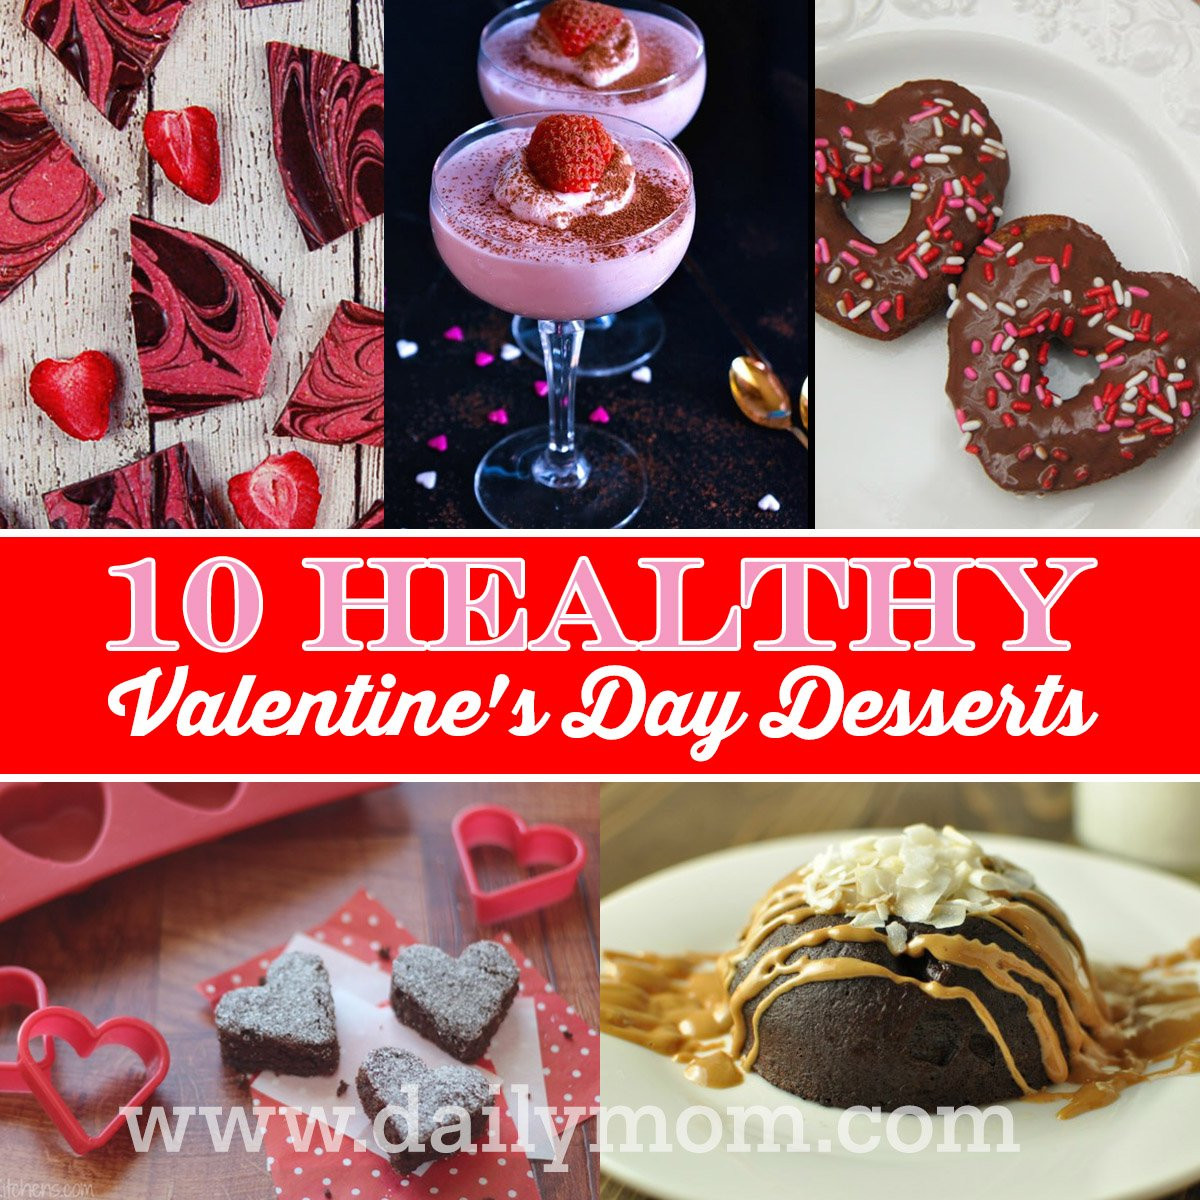 Healthy Valentine'S Day Desserts
 10 Healthy Valentine s Day Desserts Daily Mom